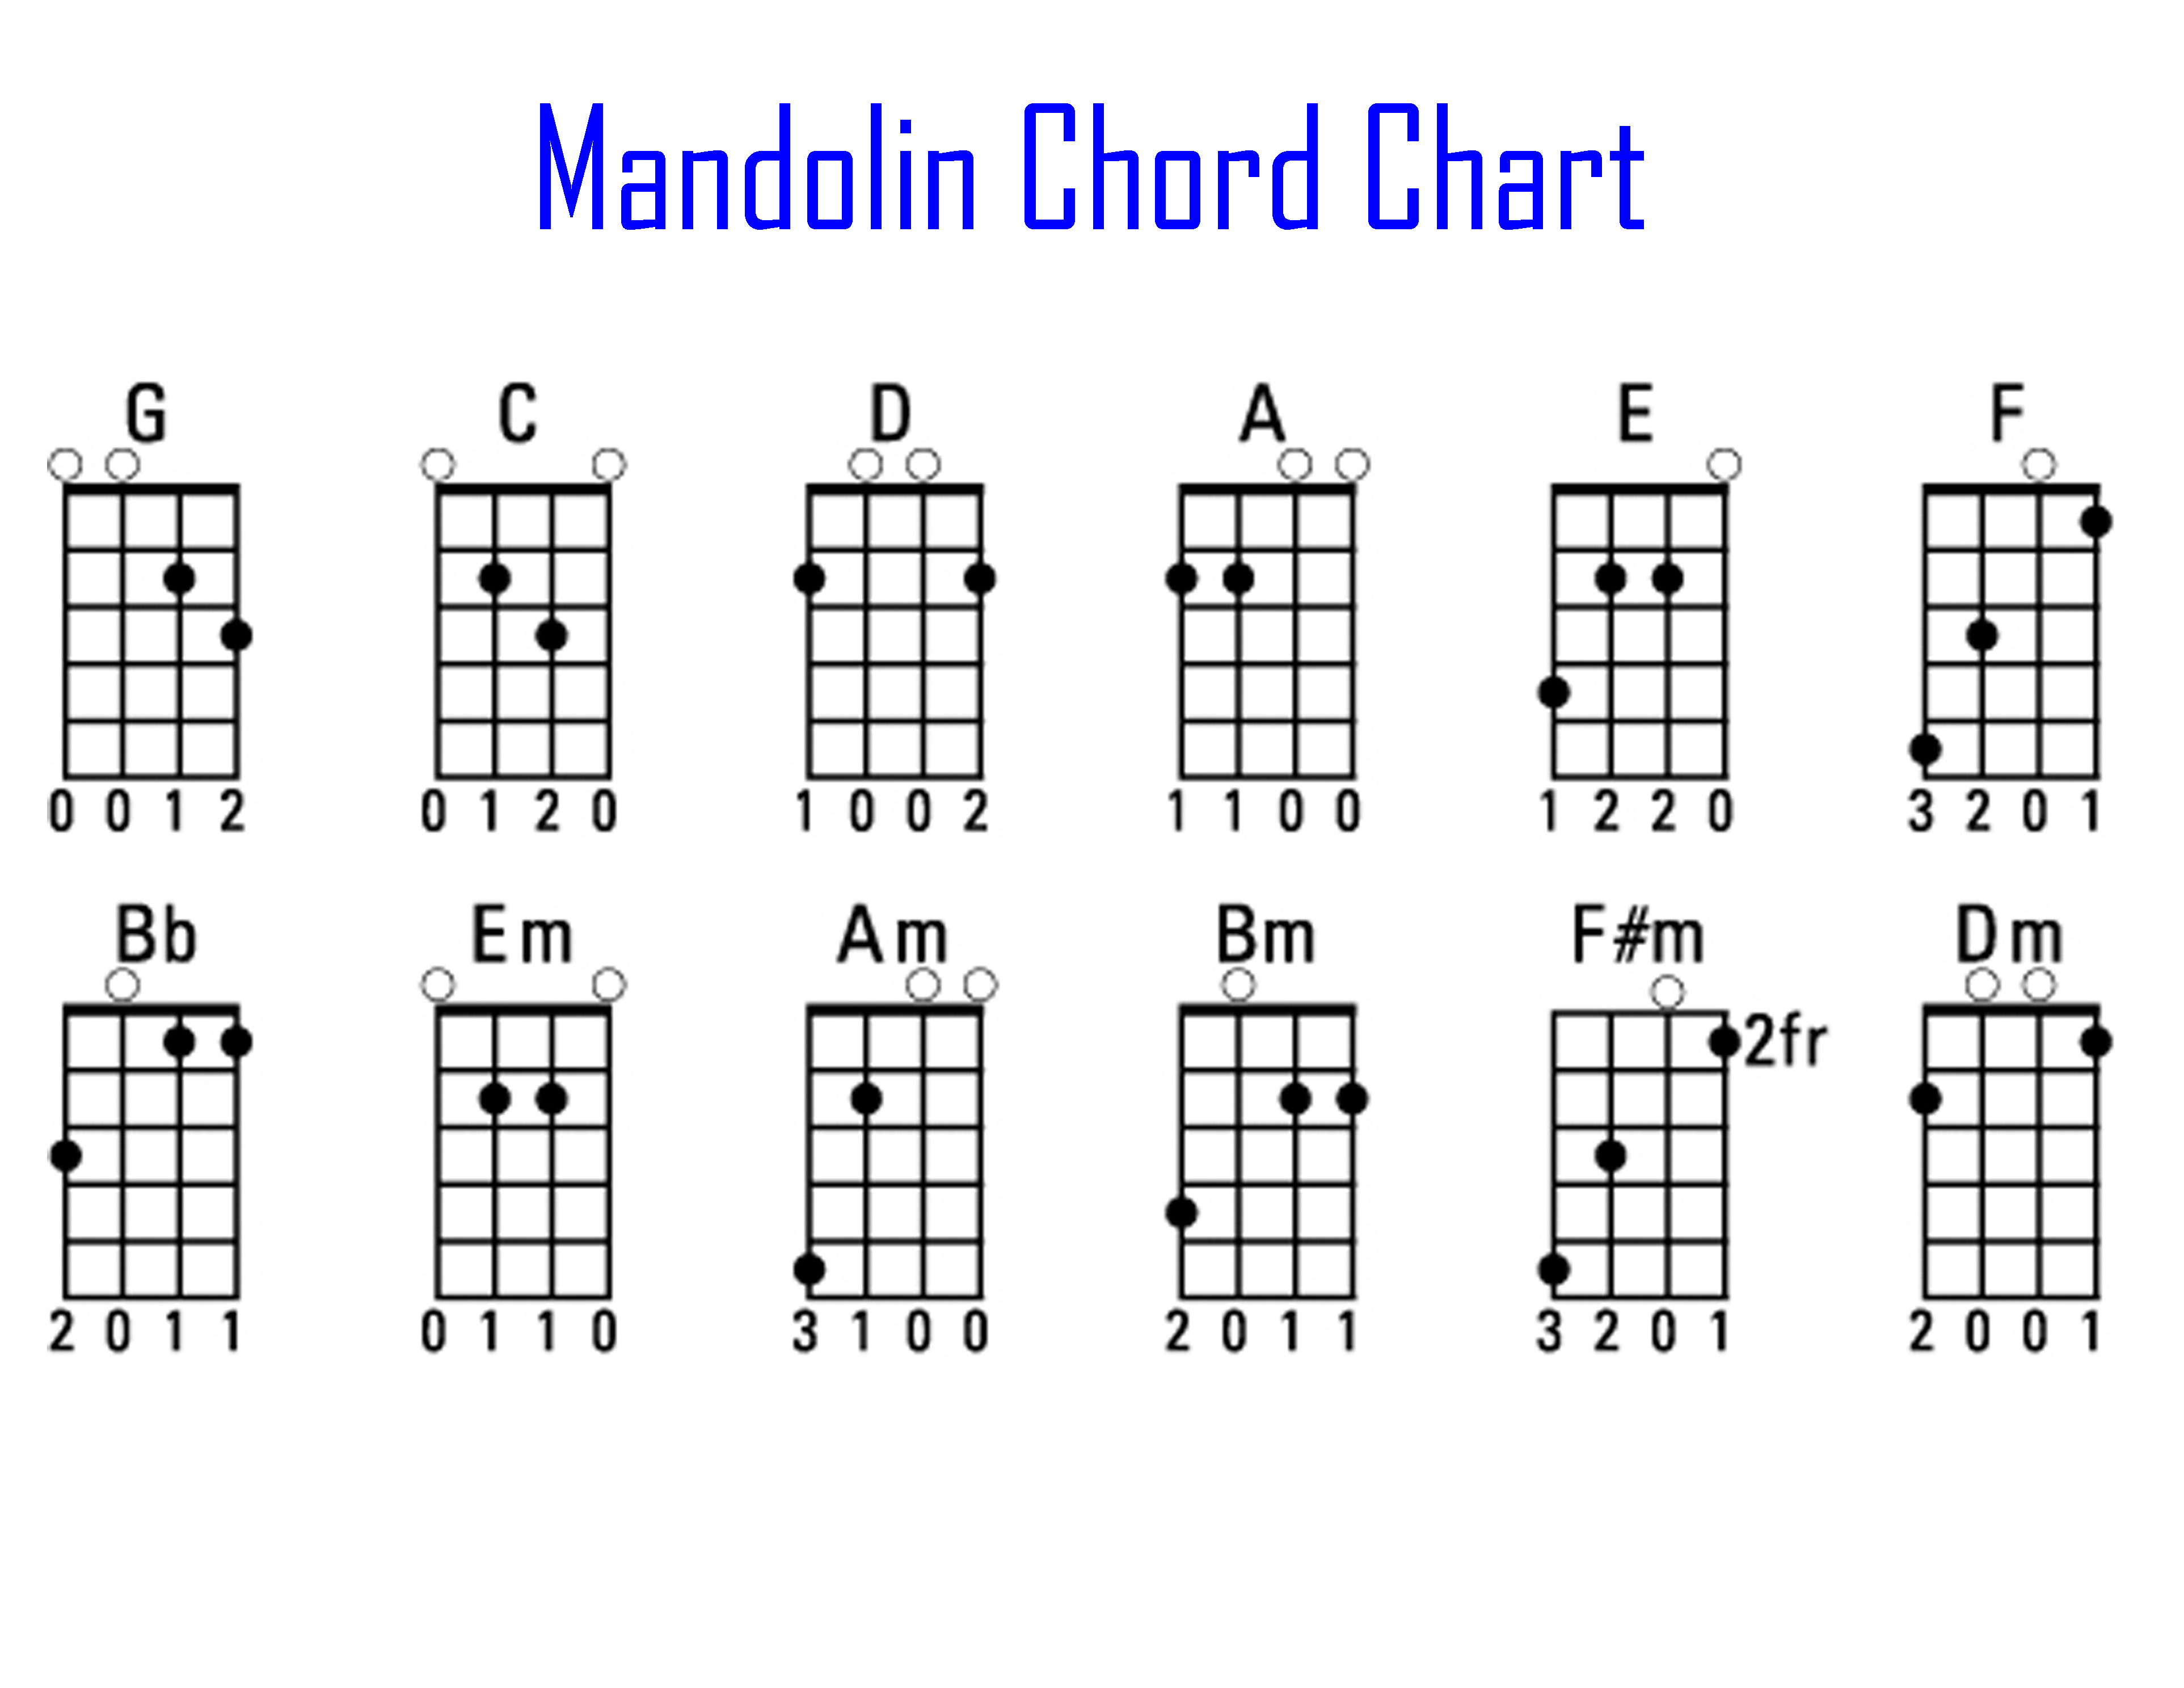 Bm mandolin chord